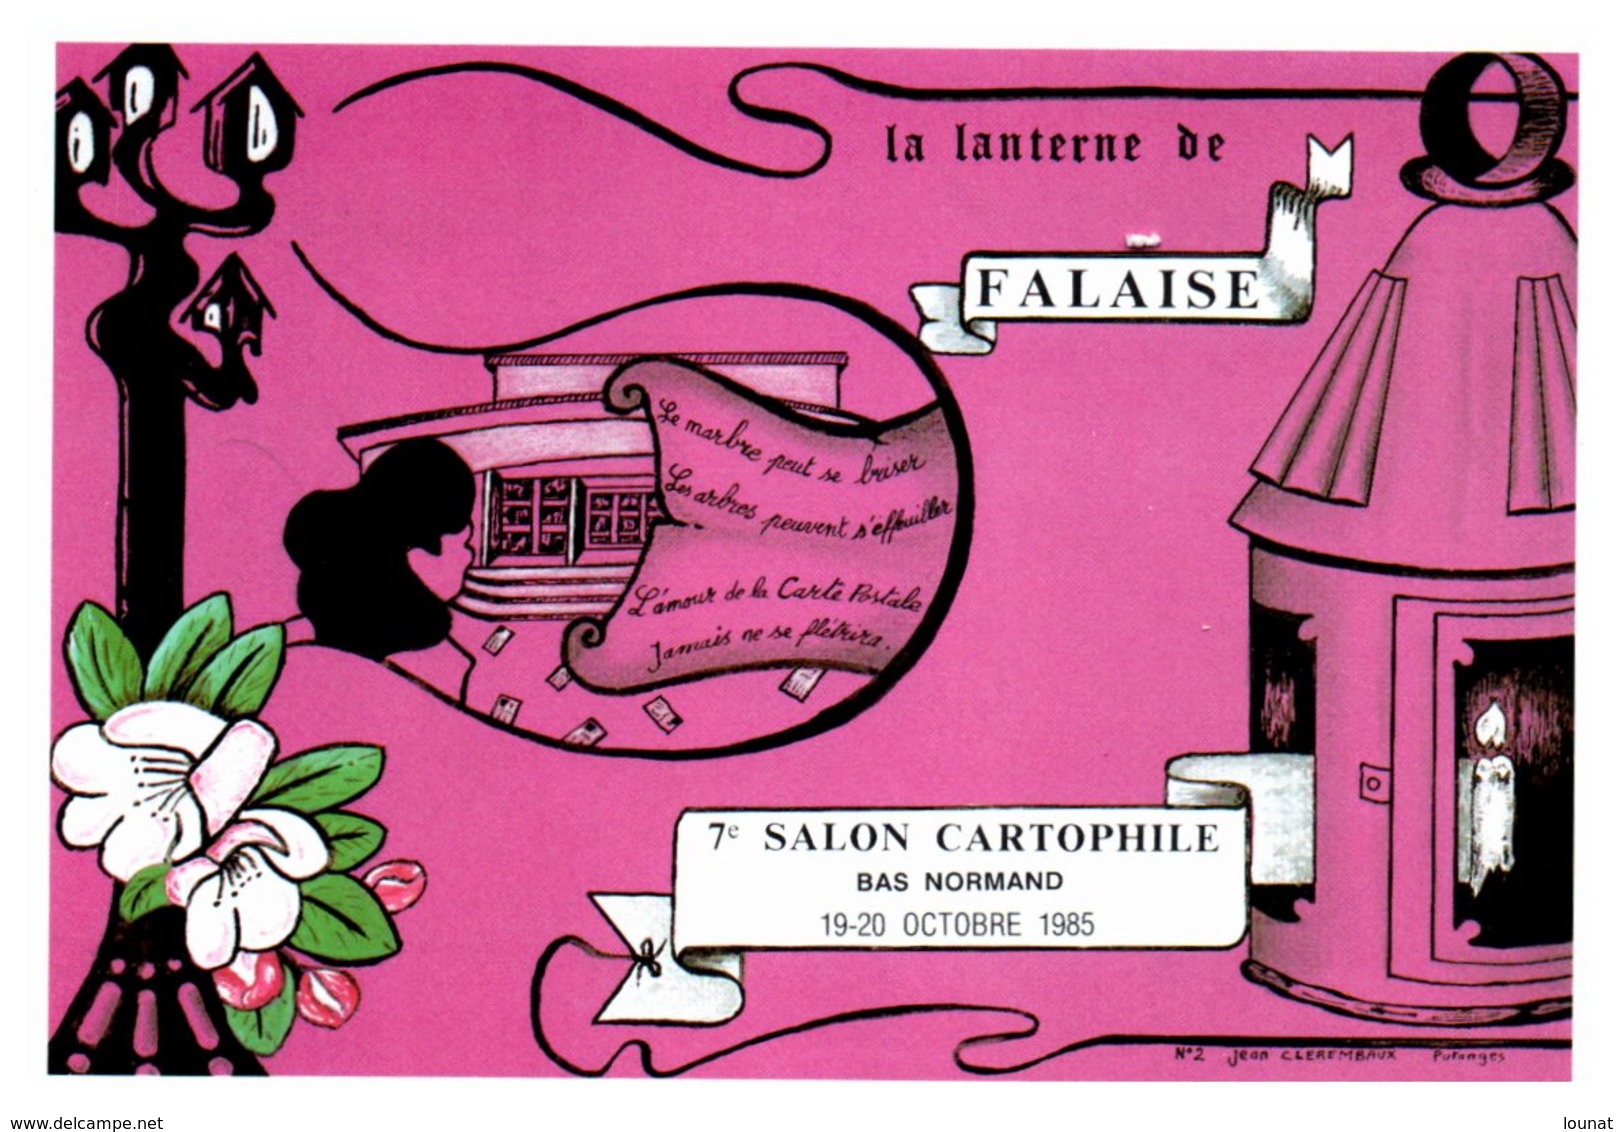 Bourse Et Salon De Collection - FALAISE - La Lanterne De Falaise - 7 ème Salon Cartophile  - Année 1985 - Bourses & Salons De Collections